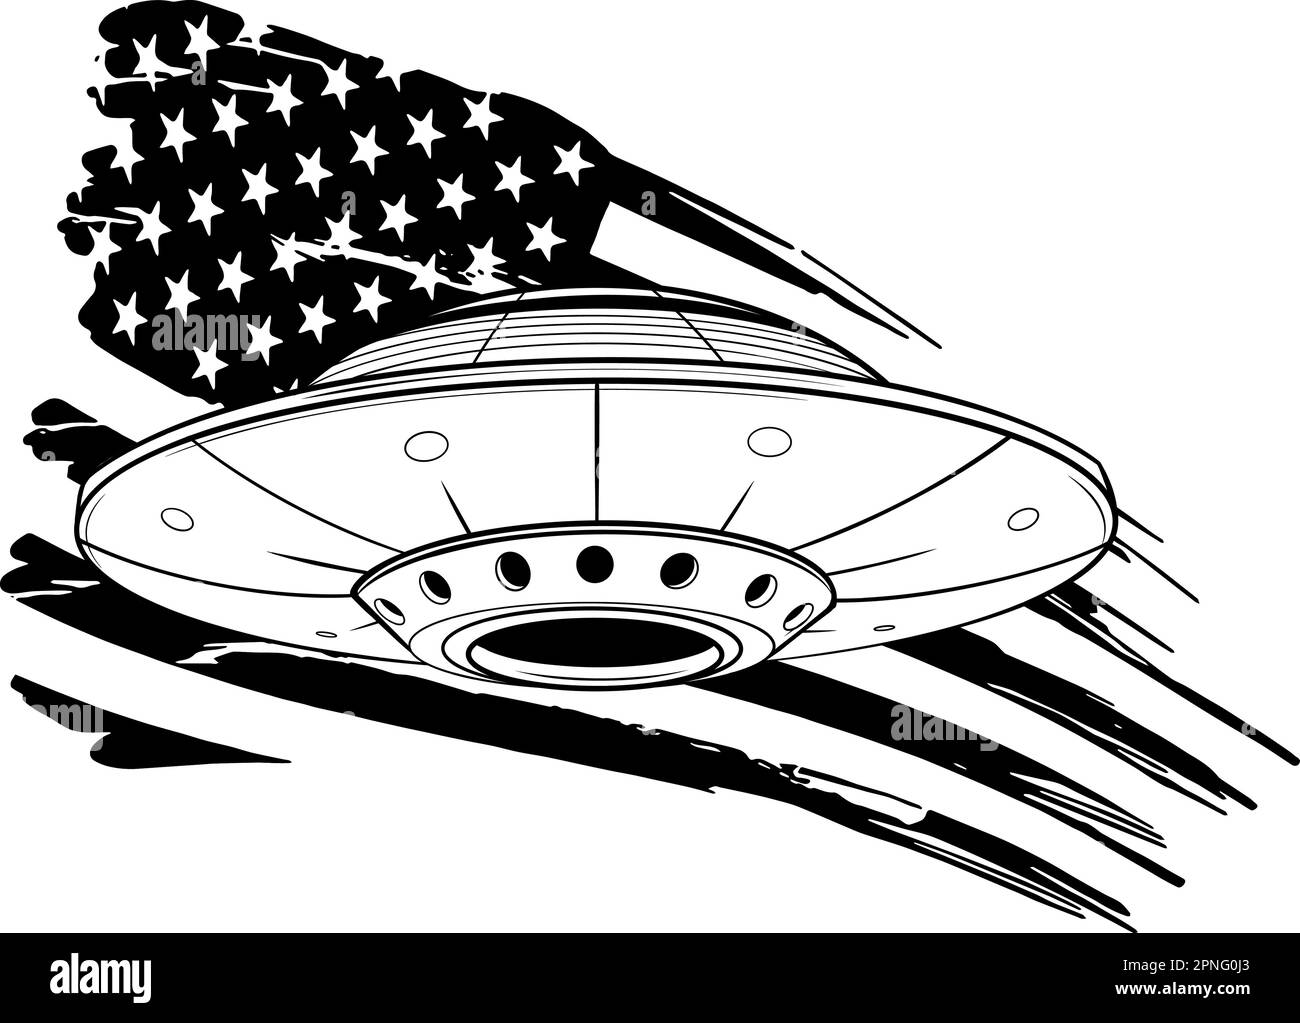 illustrazione vettoriale di ufo monocromatico con flag americano Illustrazione Vettoriale